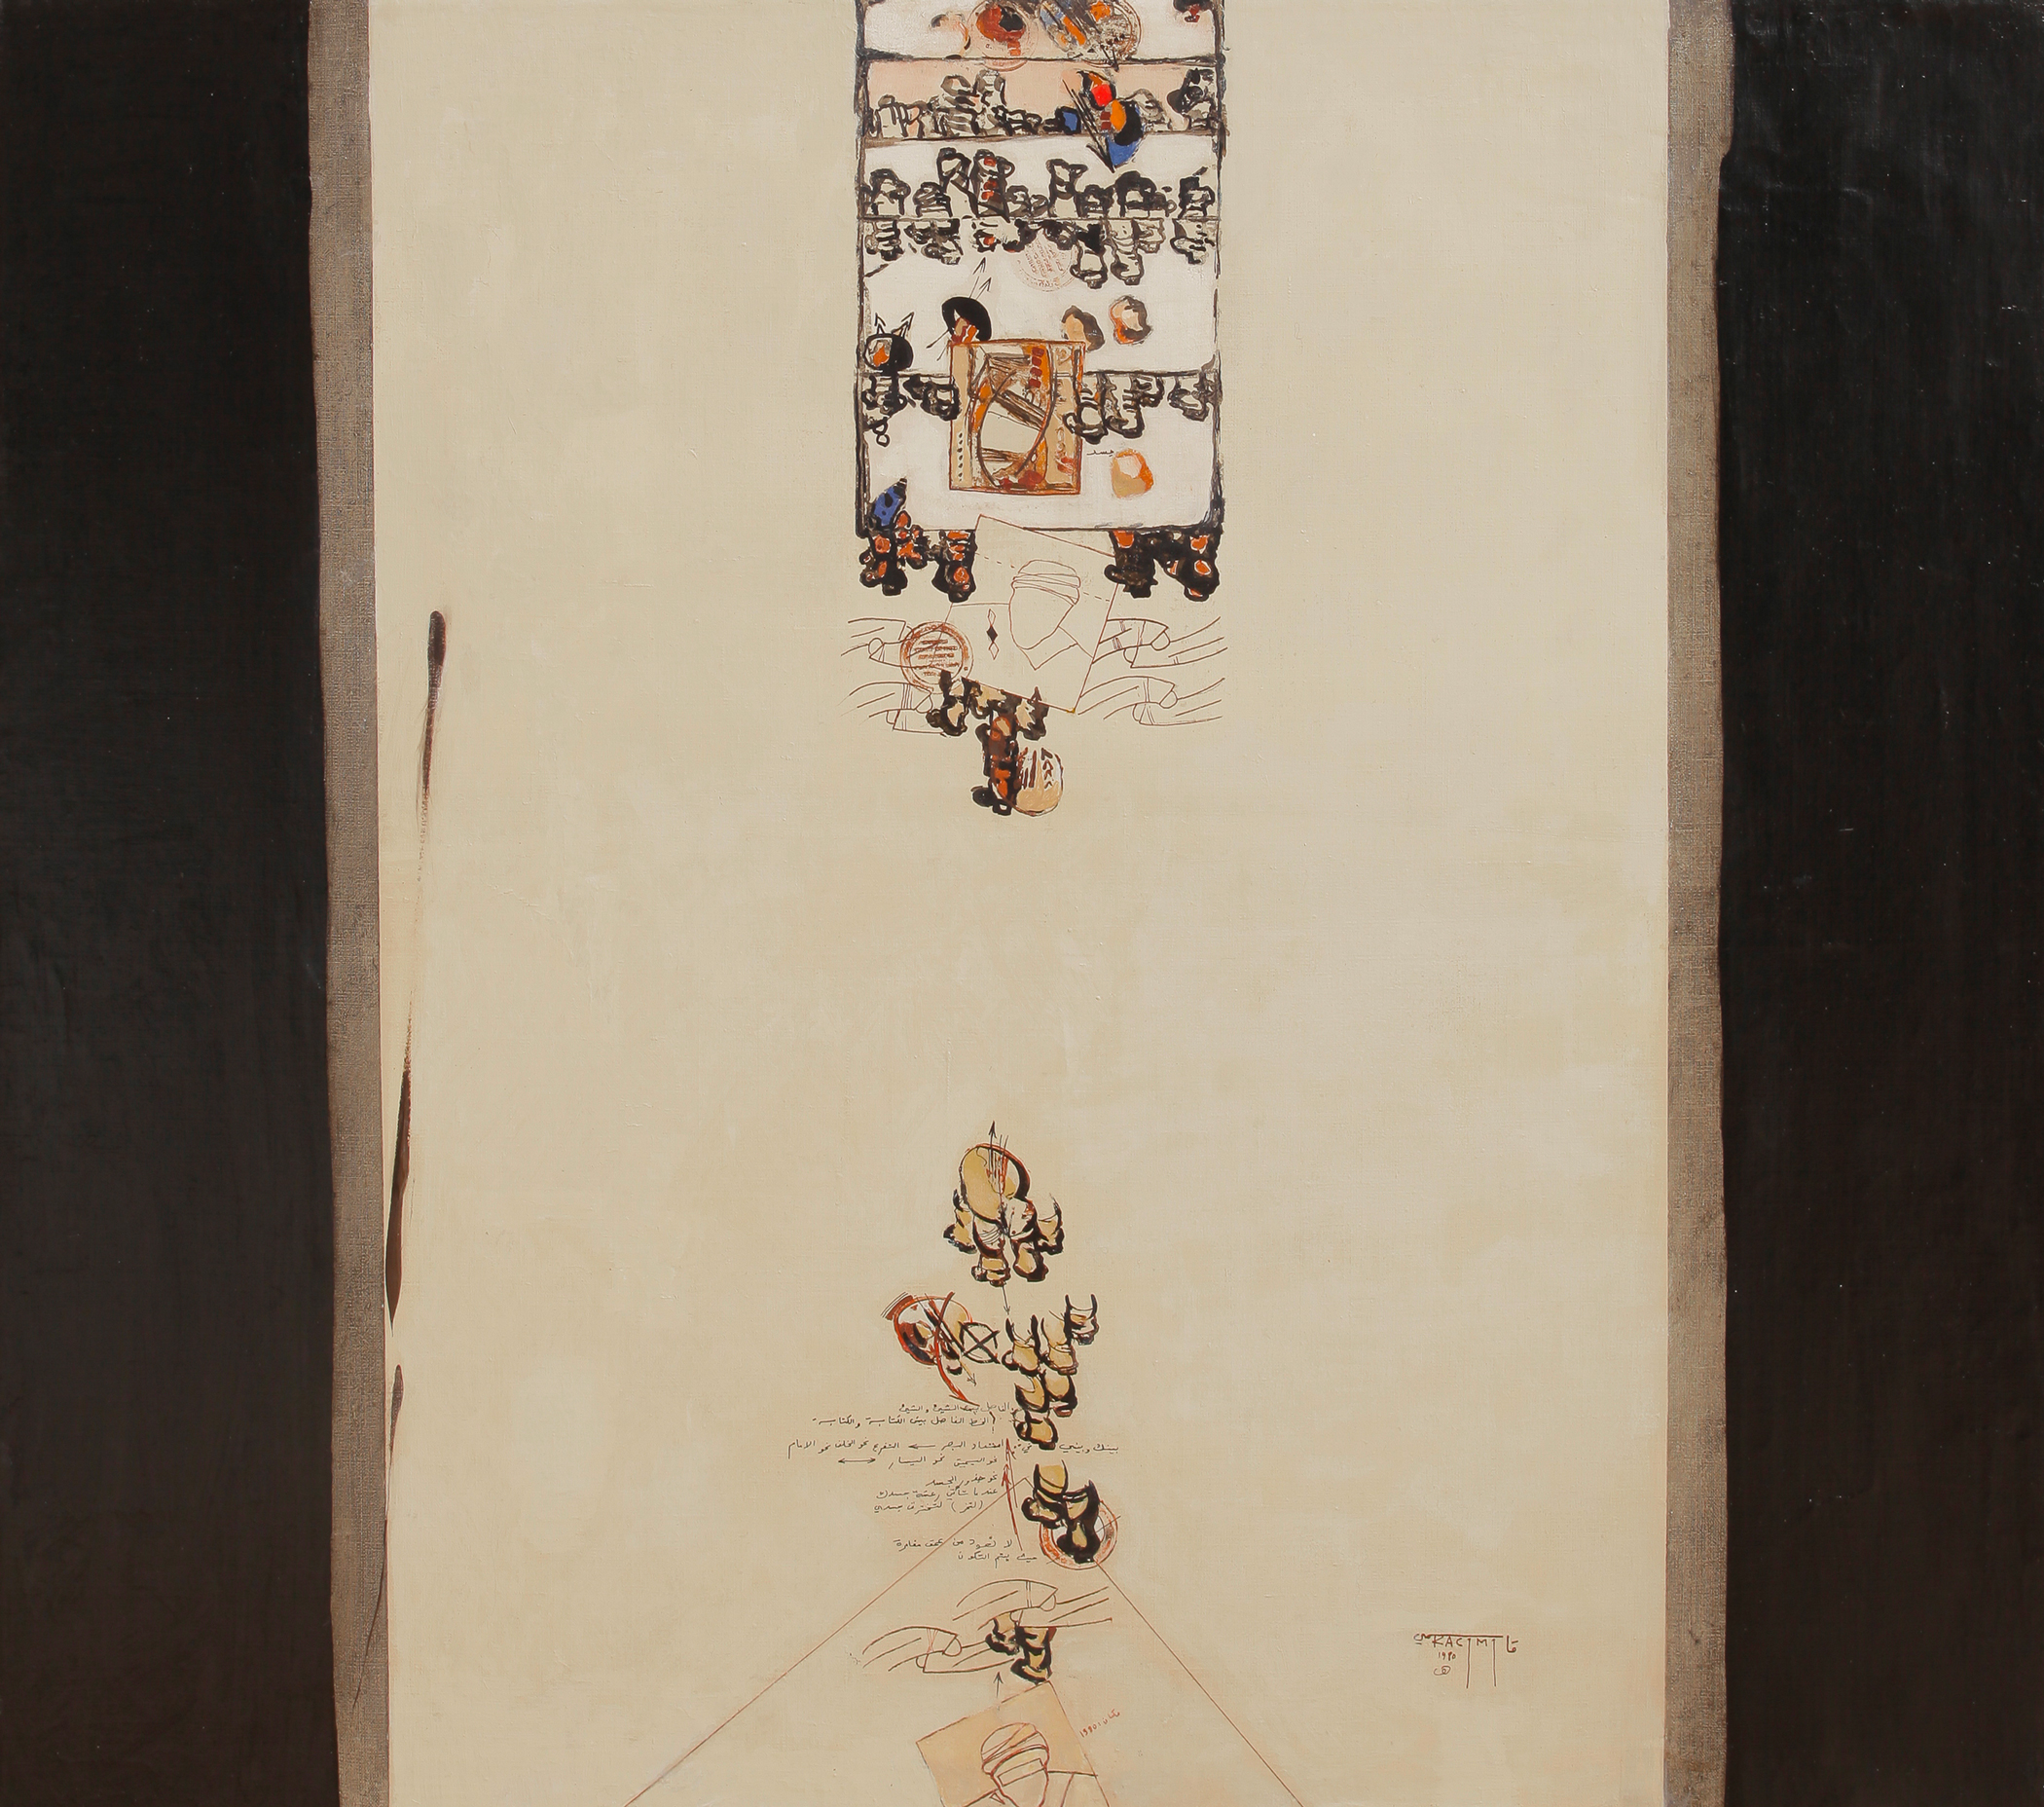 SANS TITRE, 1980. Acrylique sur toile. Signée et datée en bas à droite. 100 x 100 cm